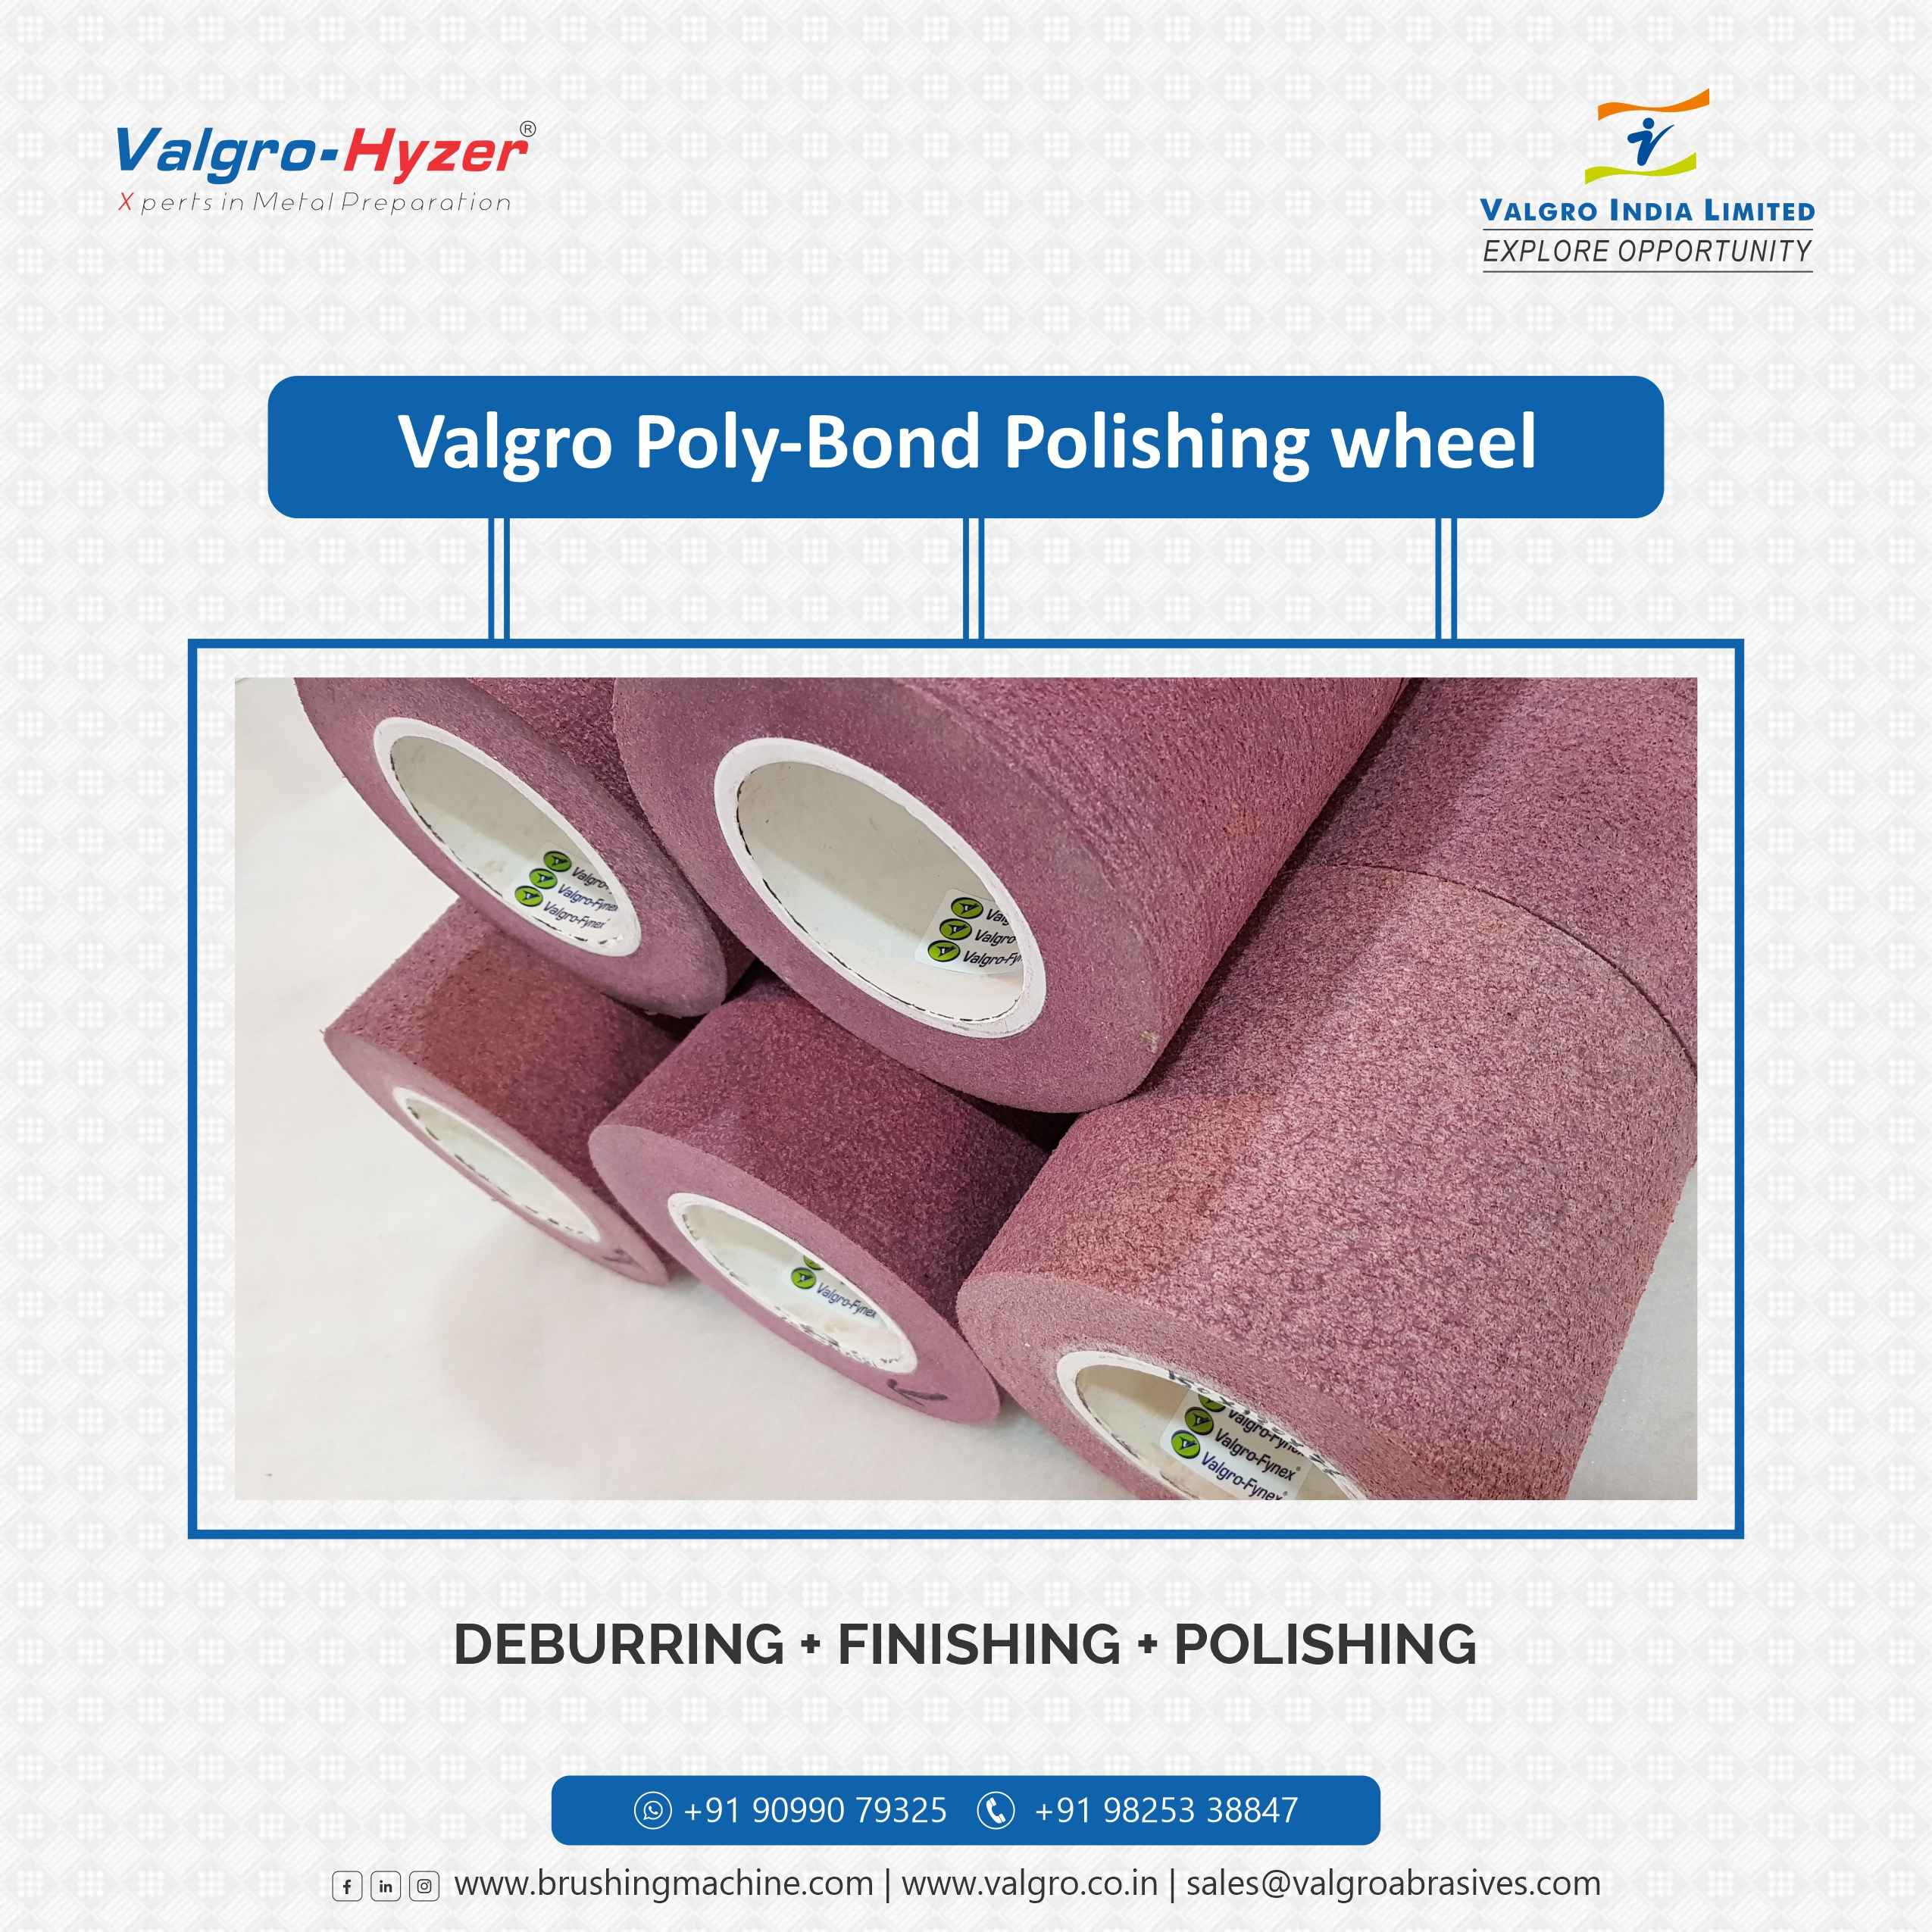 PolyBond Polishing Wheel